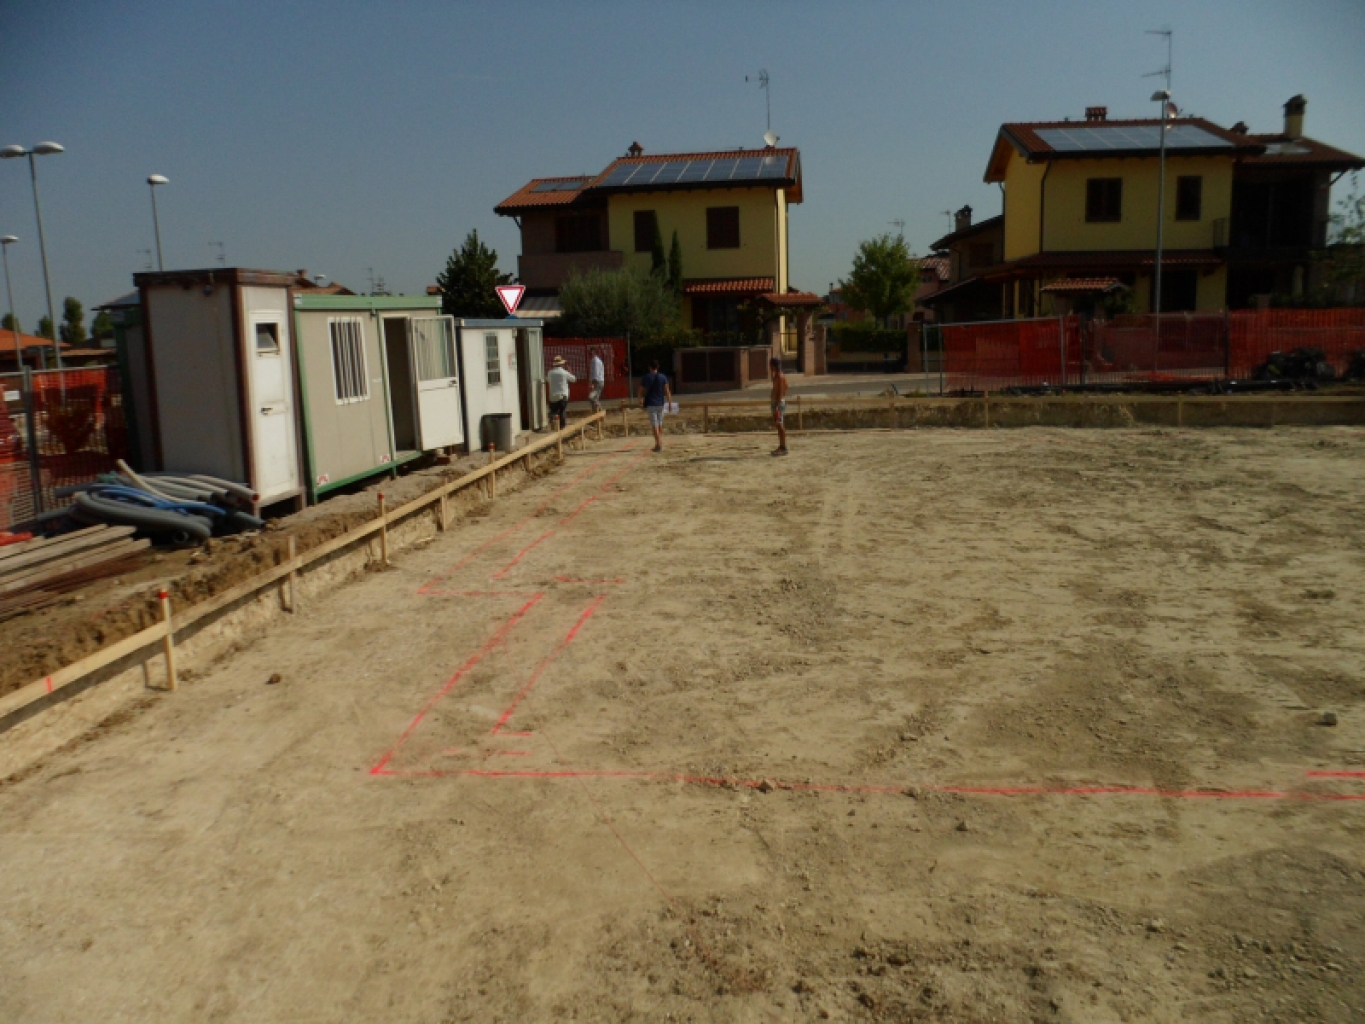 Case in Legno Bologna, Costruire Casa in Legno, Edifici in Legno